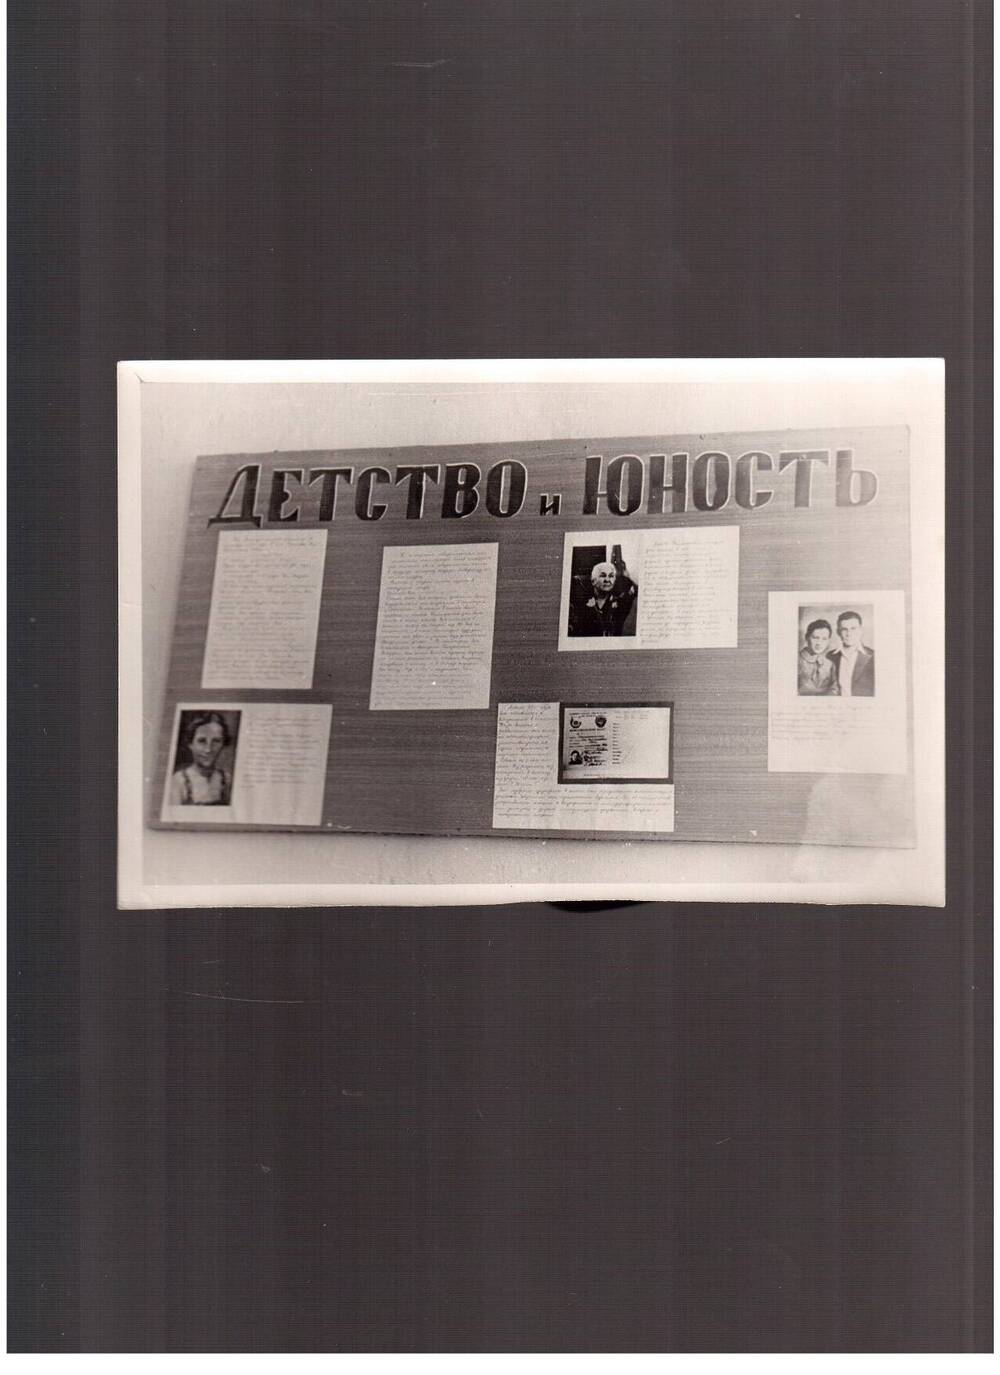 Фотография.Экспозиция музея 201-й школы г.Москвы. Стенд Детство и юность 1970 г.